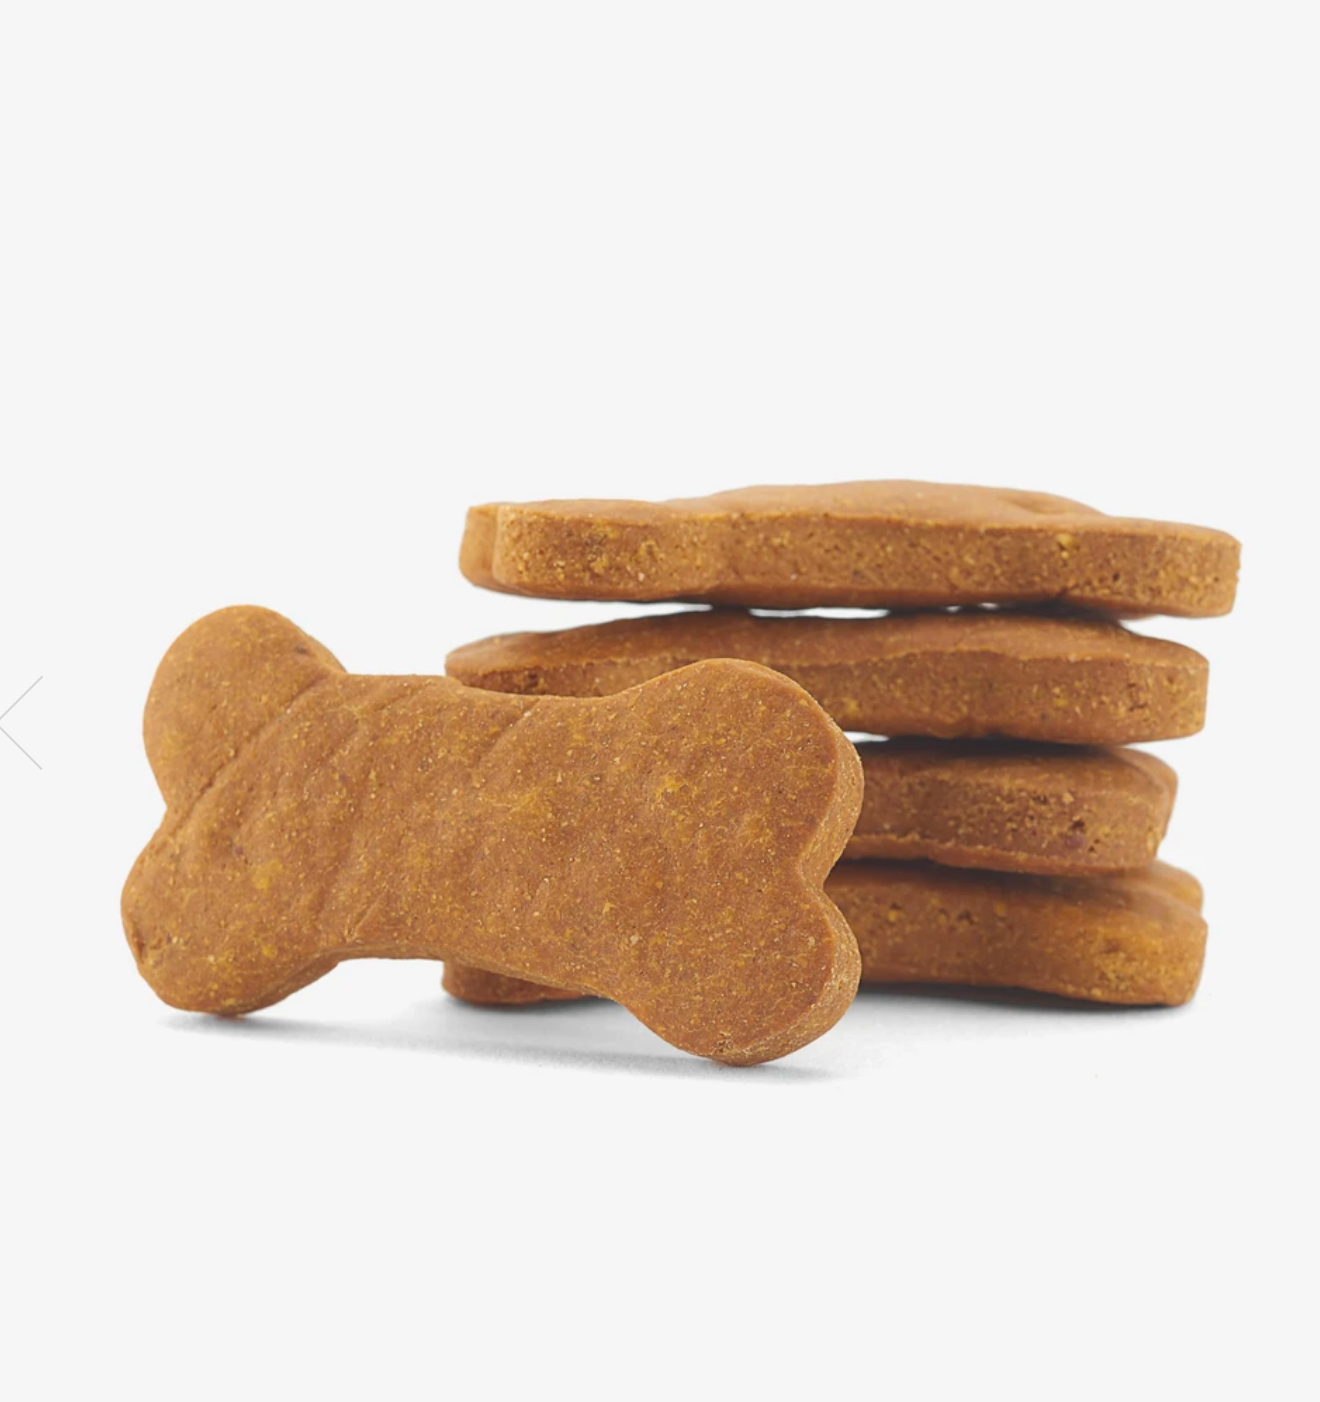 Grain & Gluten Free Pumpkin Dog Biscuits biscut